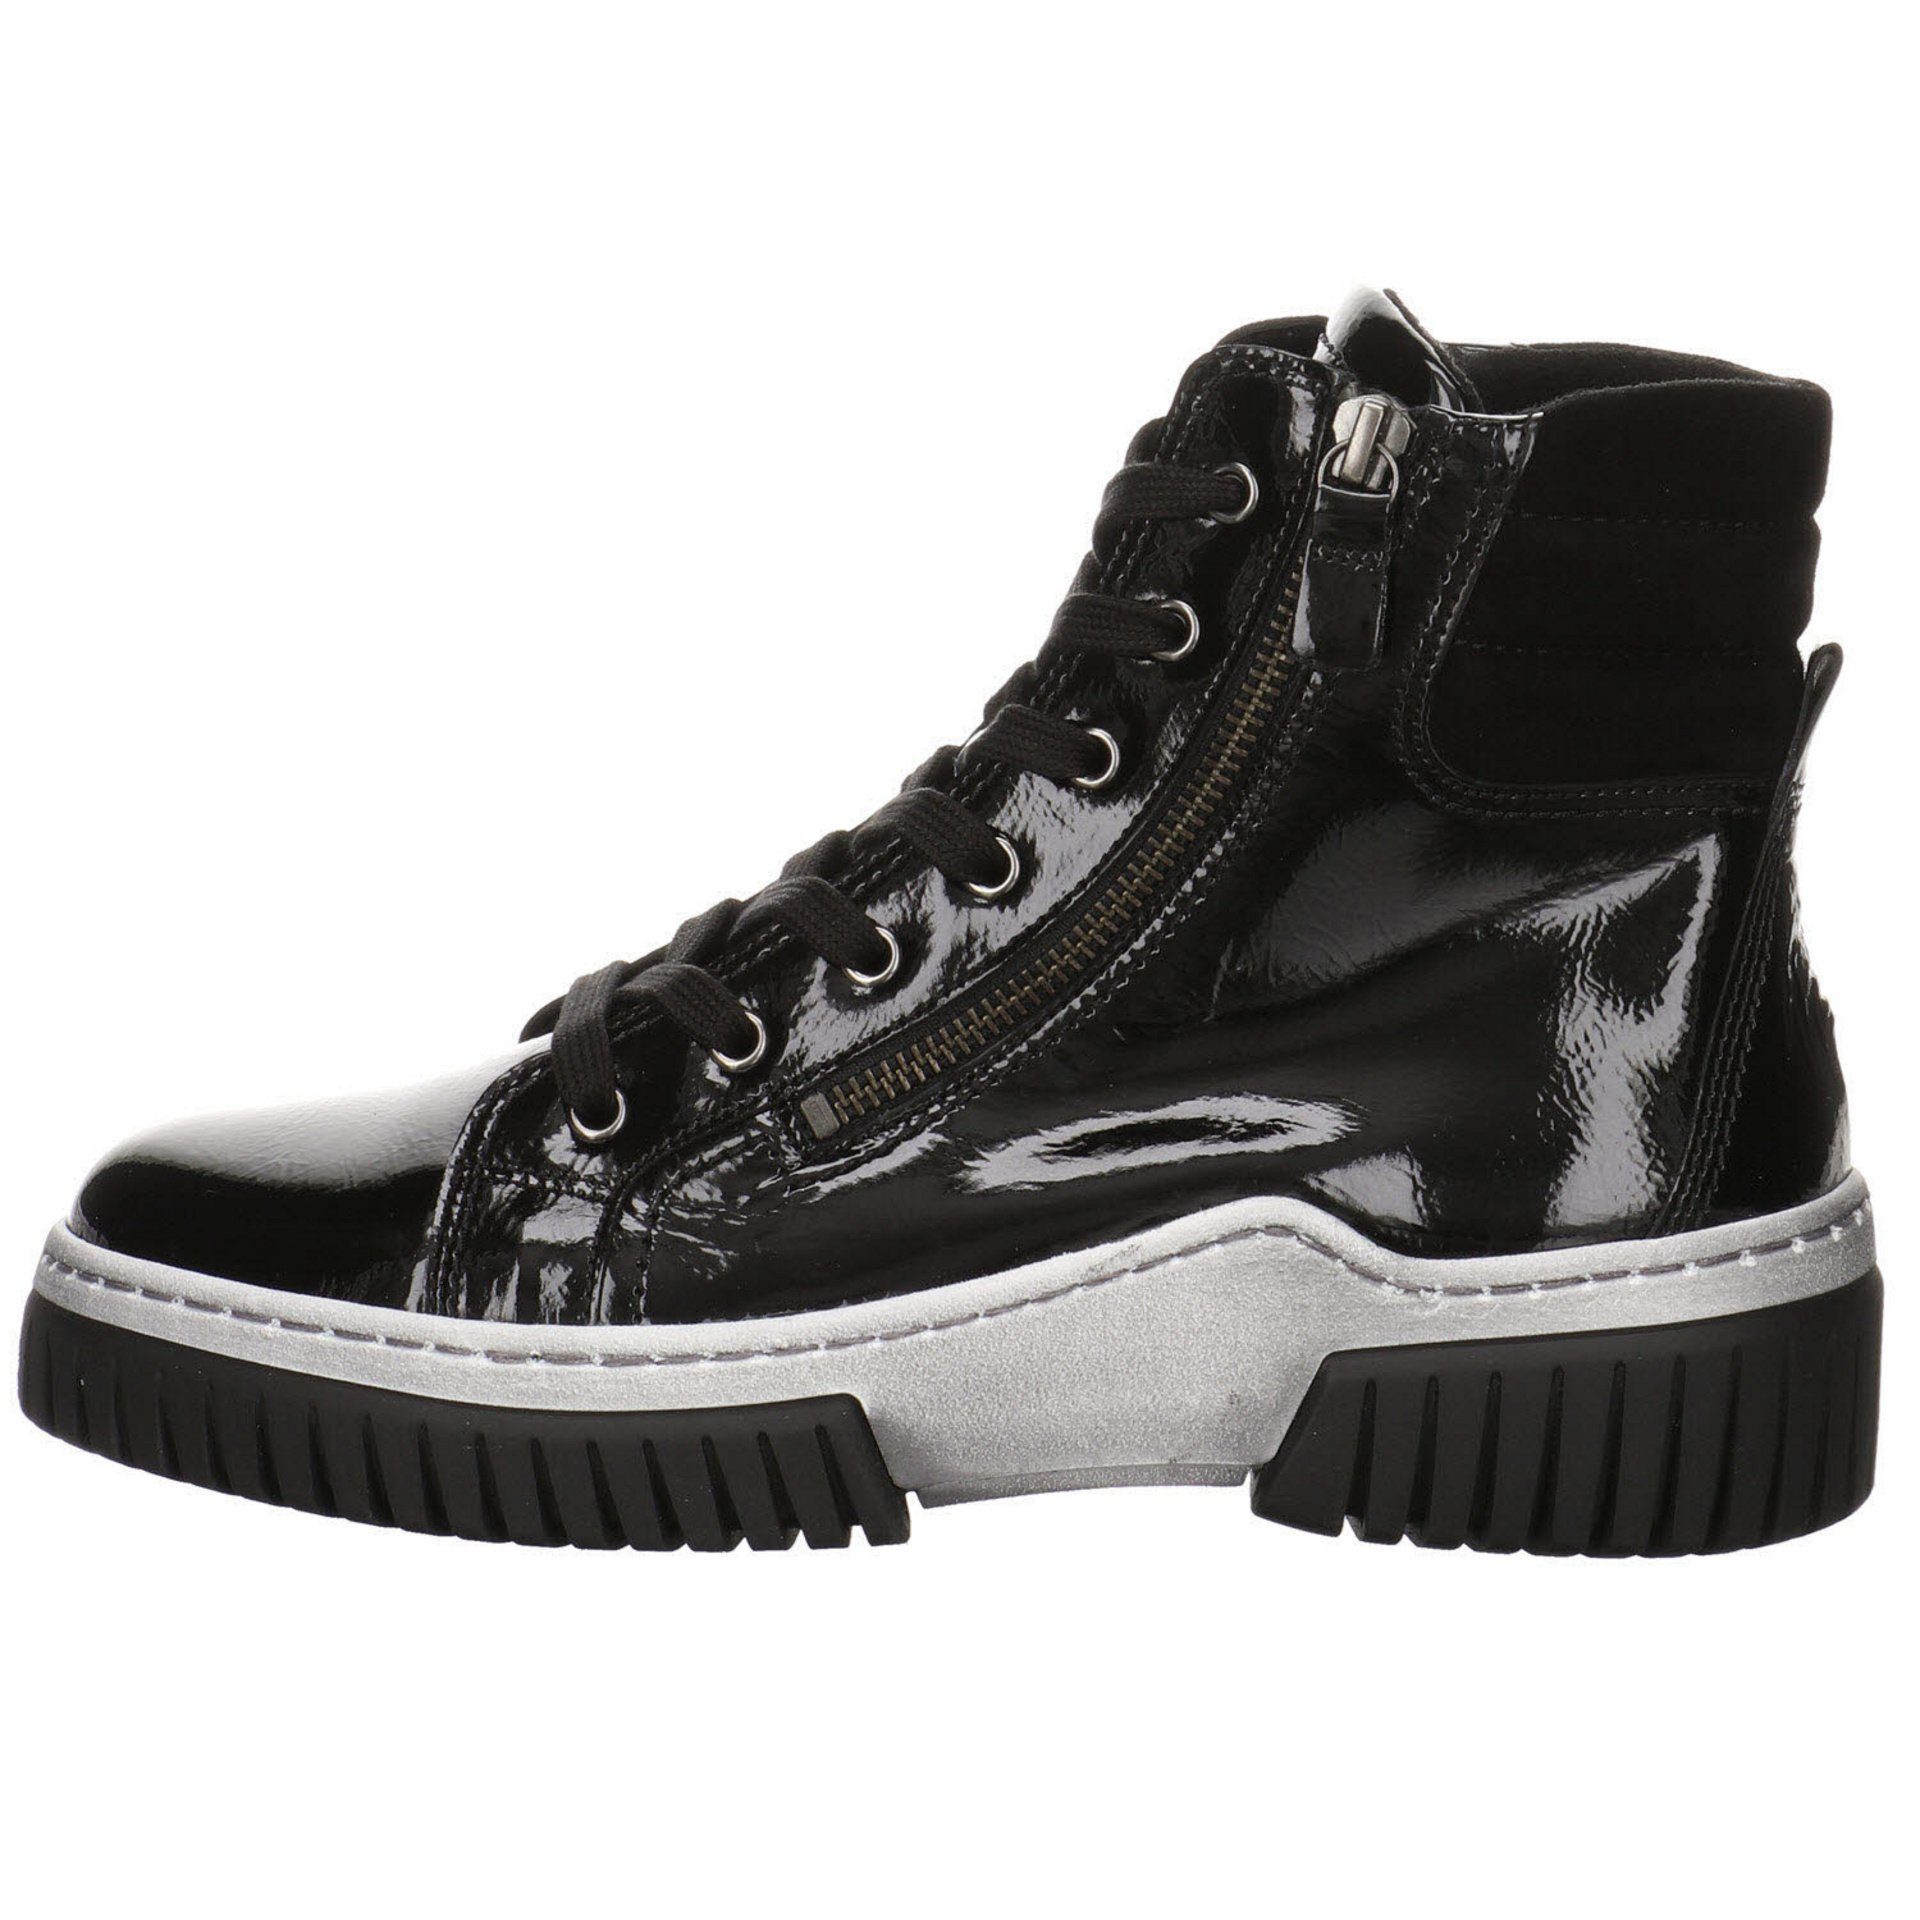 Lackleder Schuhe Damen Gabor Schnürstiefel schwarz(altsilber) Freizeit Elegant Stiefeletten Boots